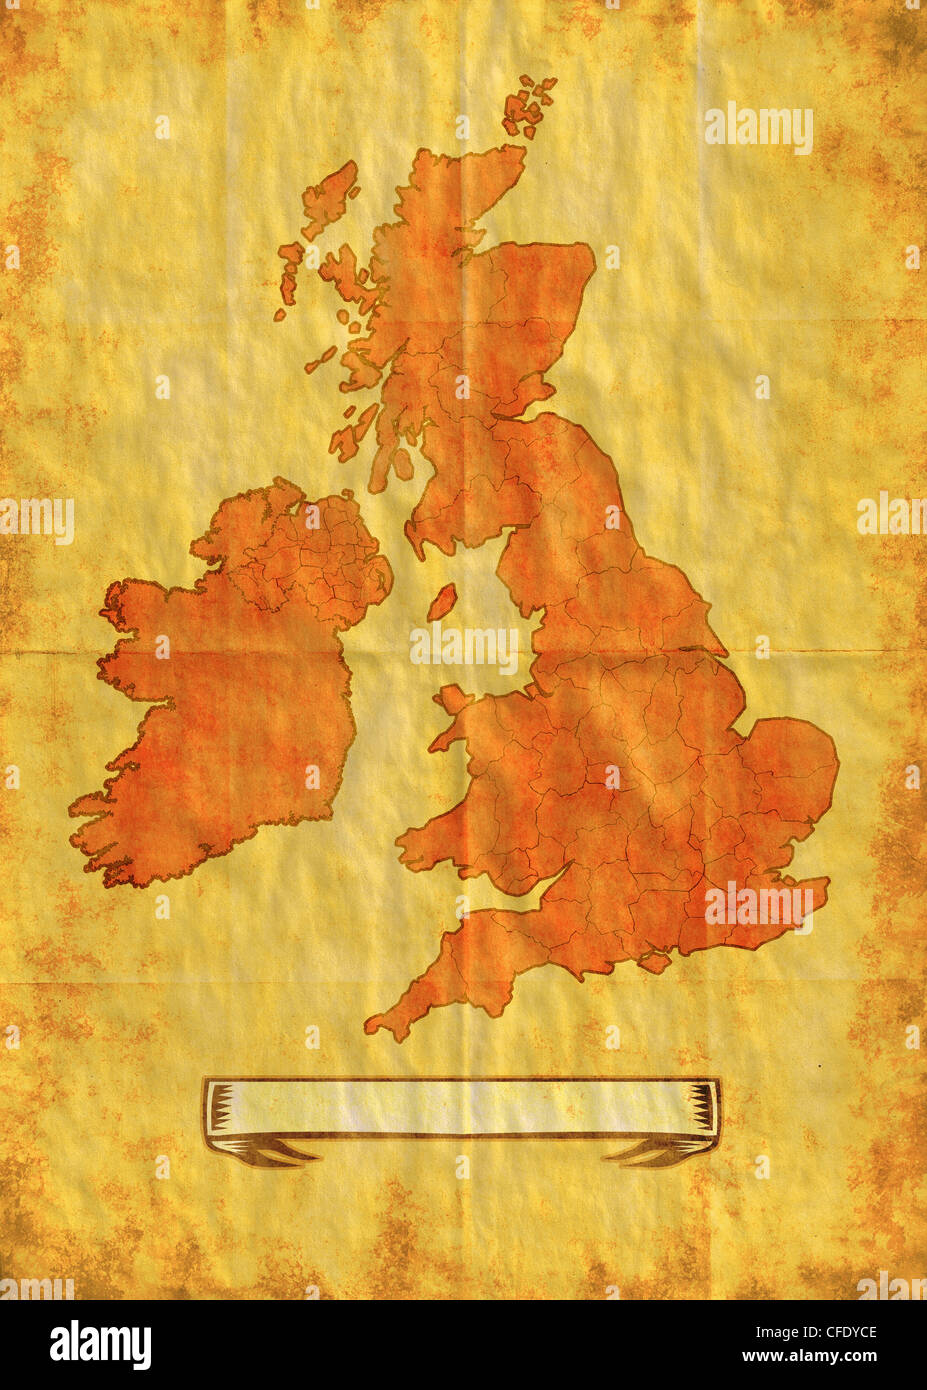 Illustrazione di una mappa delle Isole Britanniche mostrando Irlanda del Nord,l'Irlanda,il Galles, la Scozia e l'Inghilterra con il grunge Foto Stock